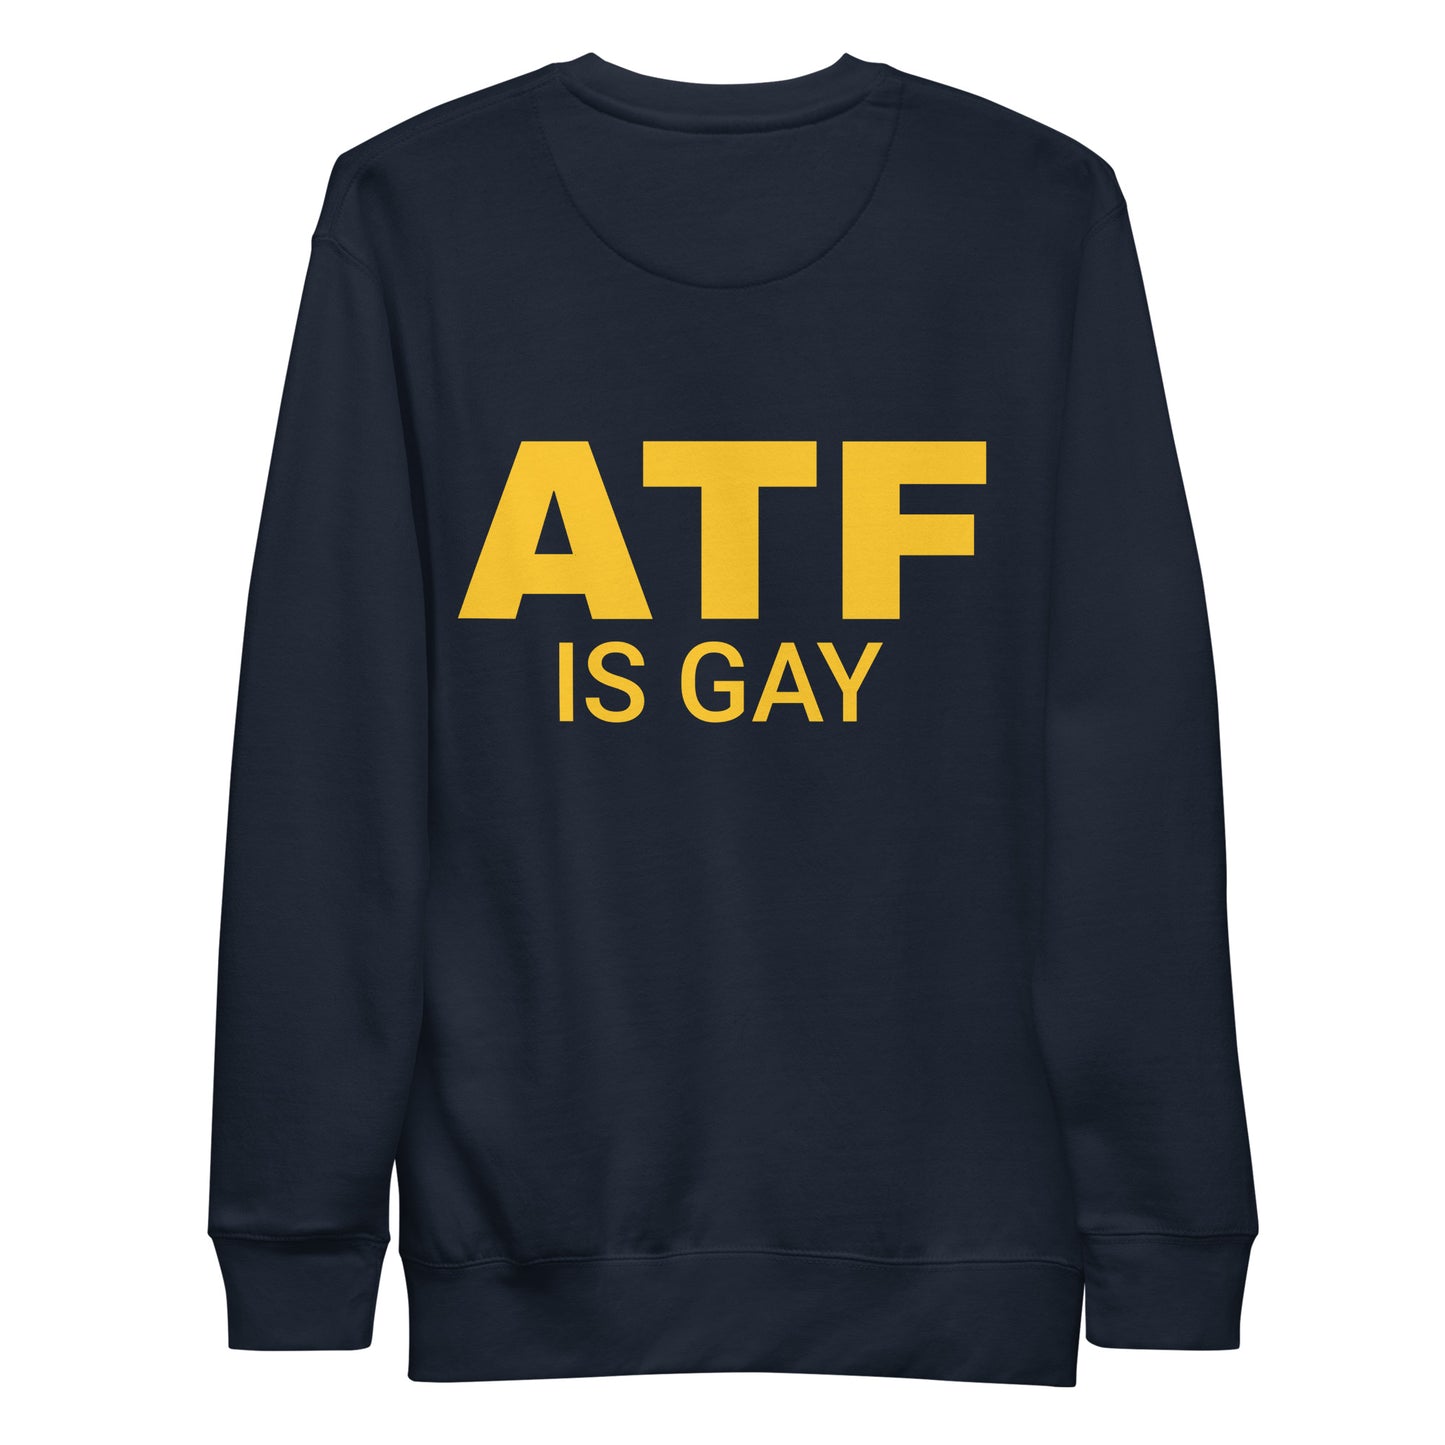 ATF IS GAY SWEATSHIRT